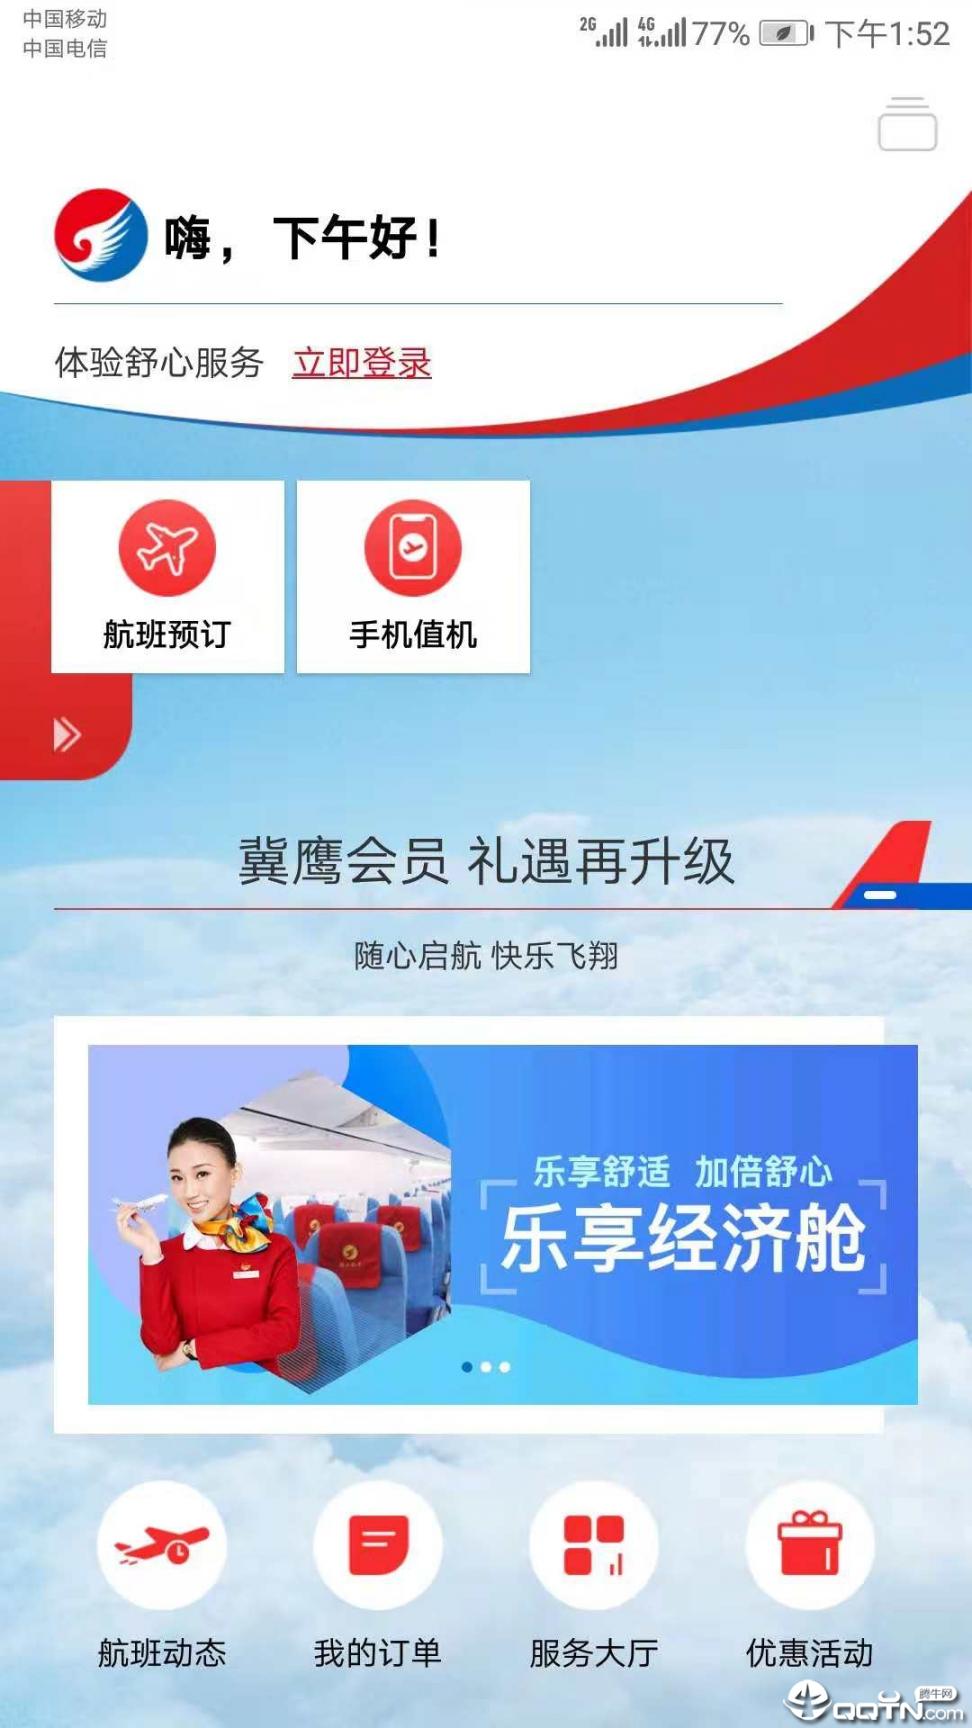 河北航空app1